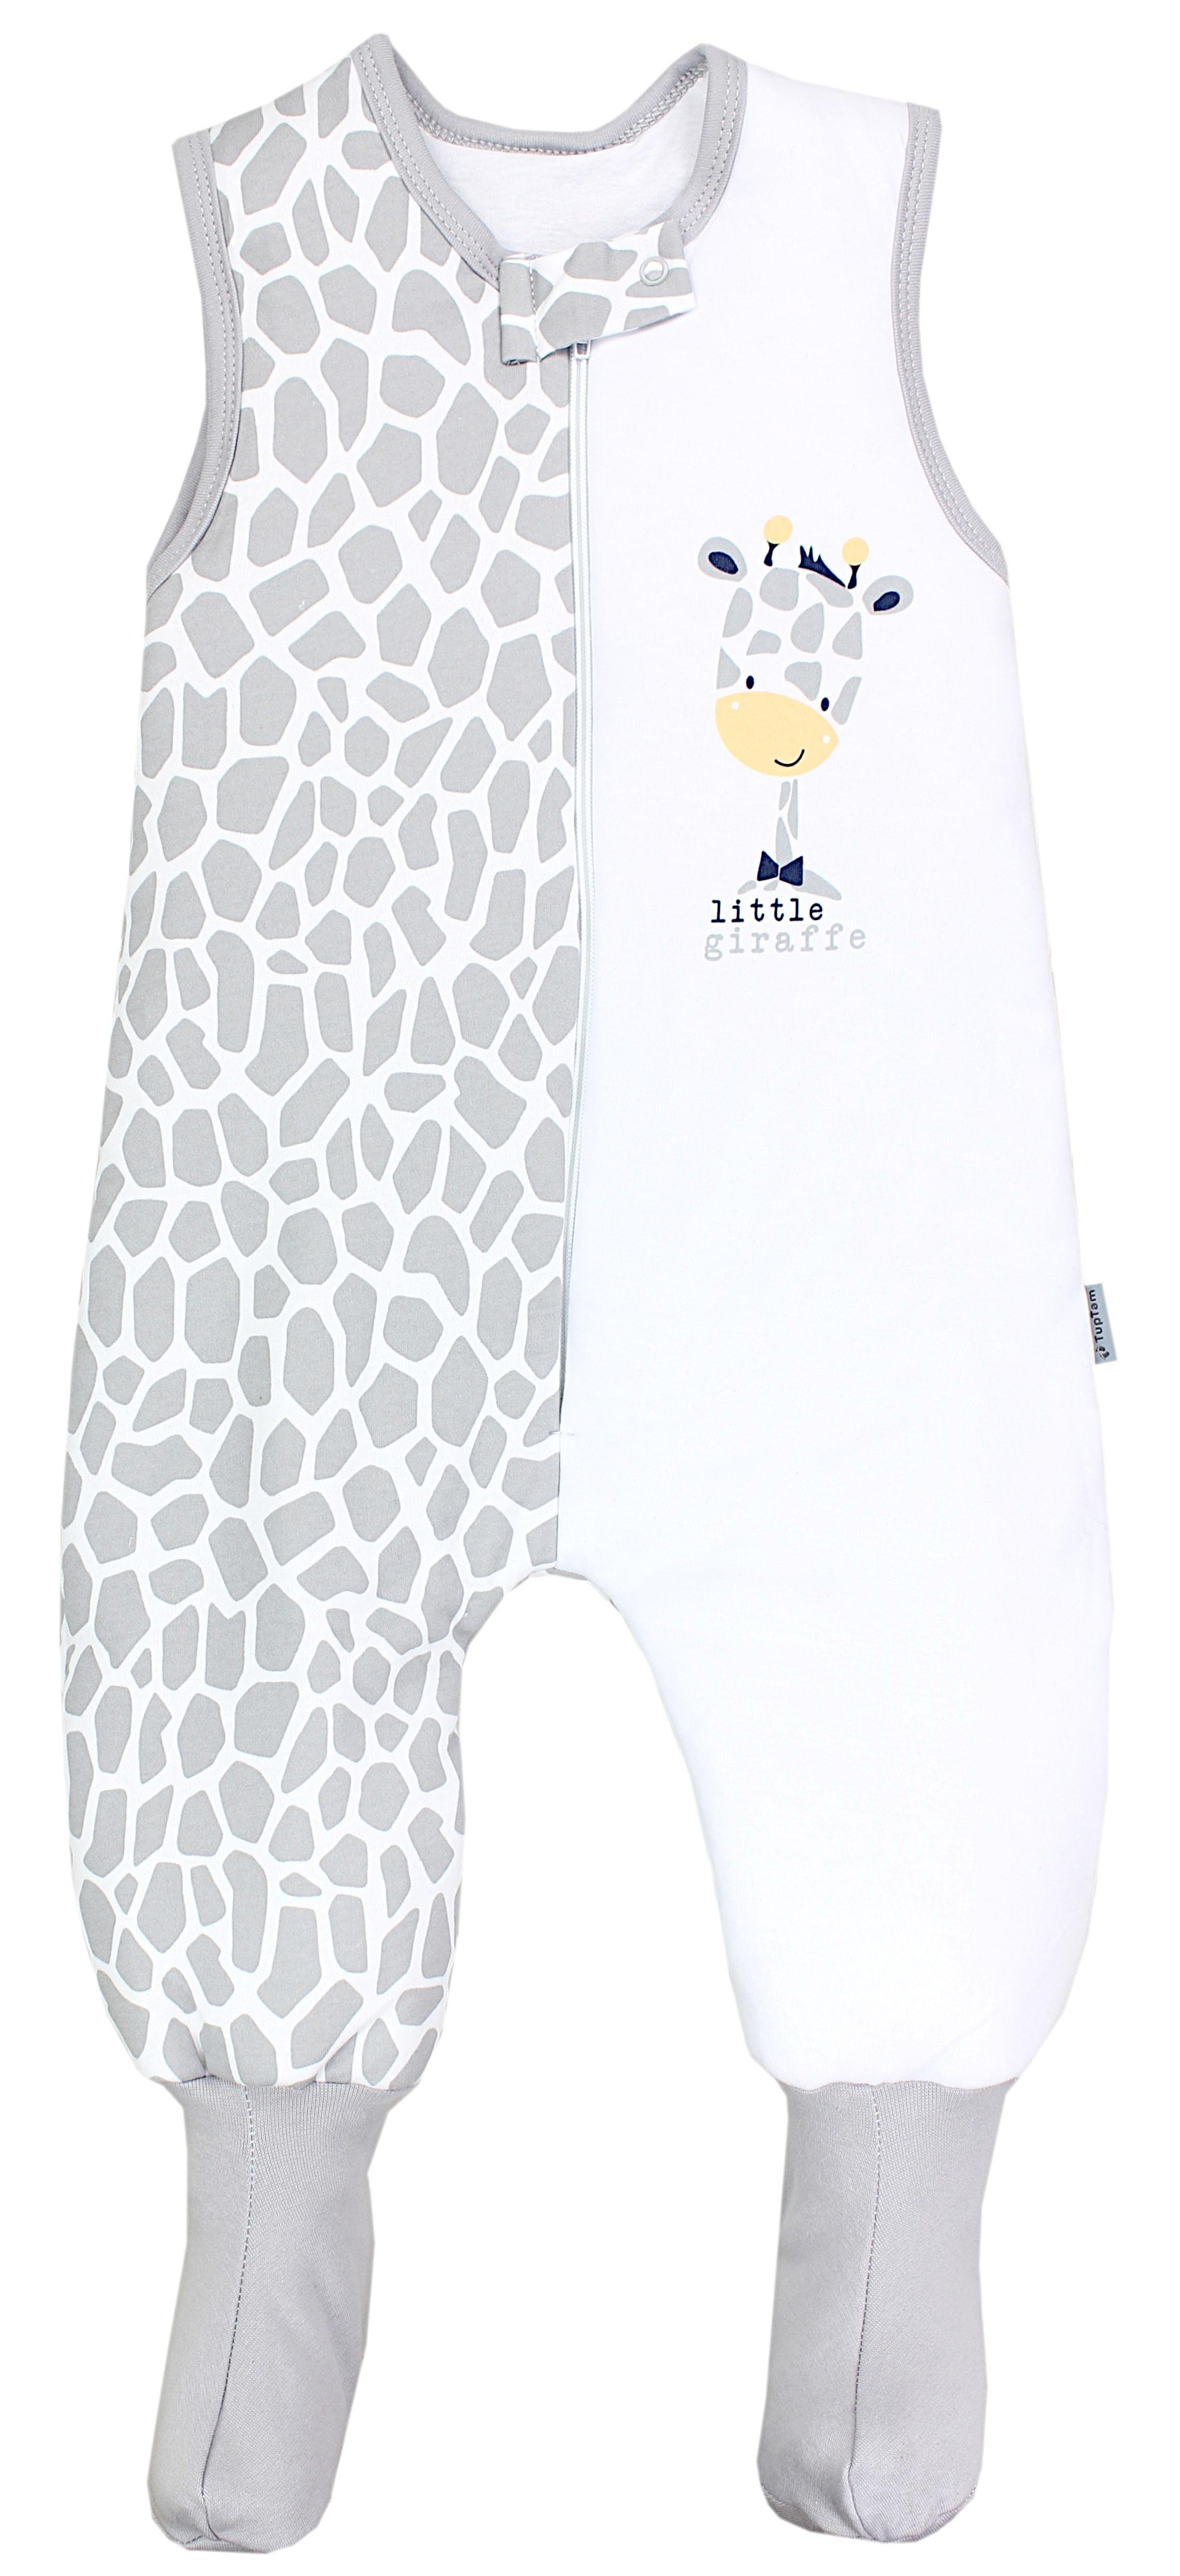 TupTam Babyschlafsack Winterschlafsack mit Beinen und Füßen OEKO-TEX zertifiziert, 2.5 TOG Giraffe